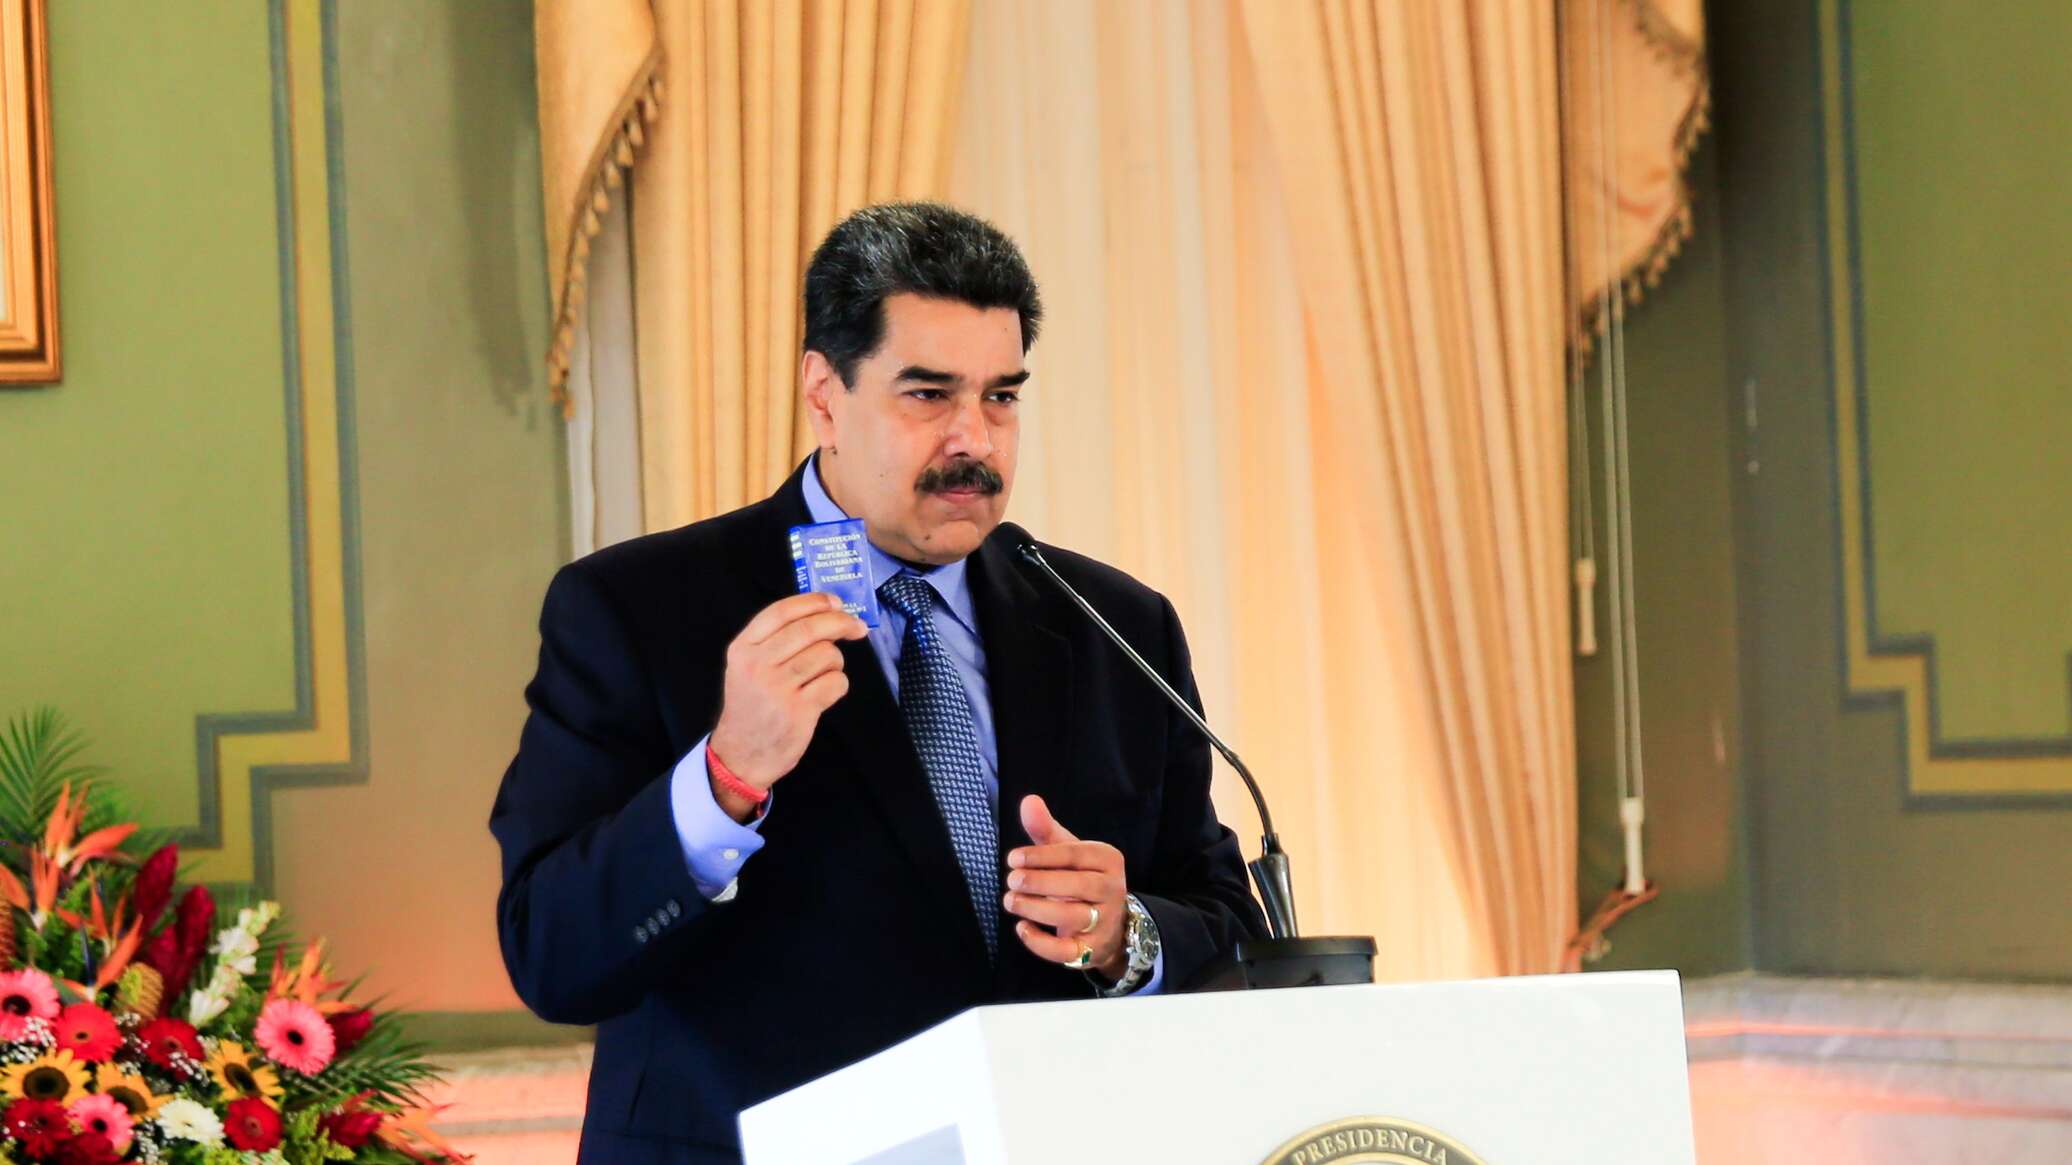 الرئيس الفنزويلي يعلن تعرضه لمحاولة اغتيال فاشلة خلال تجمع حاشد في كاراكاس